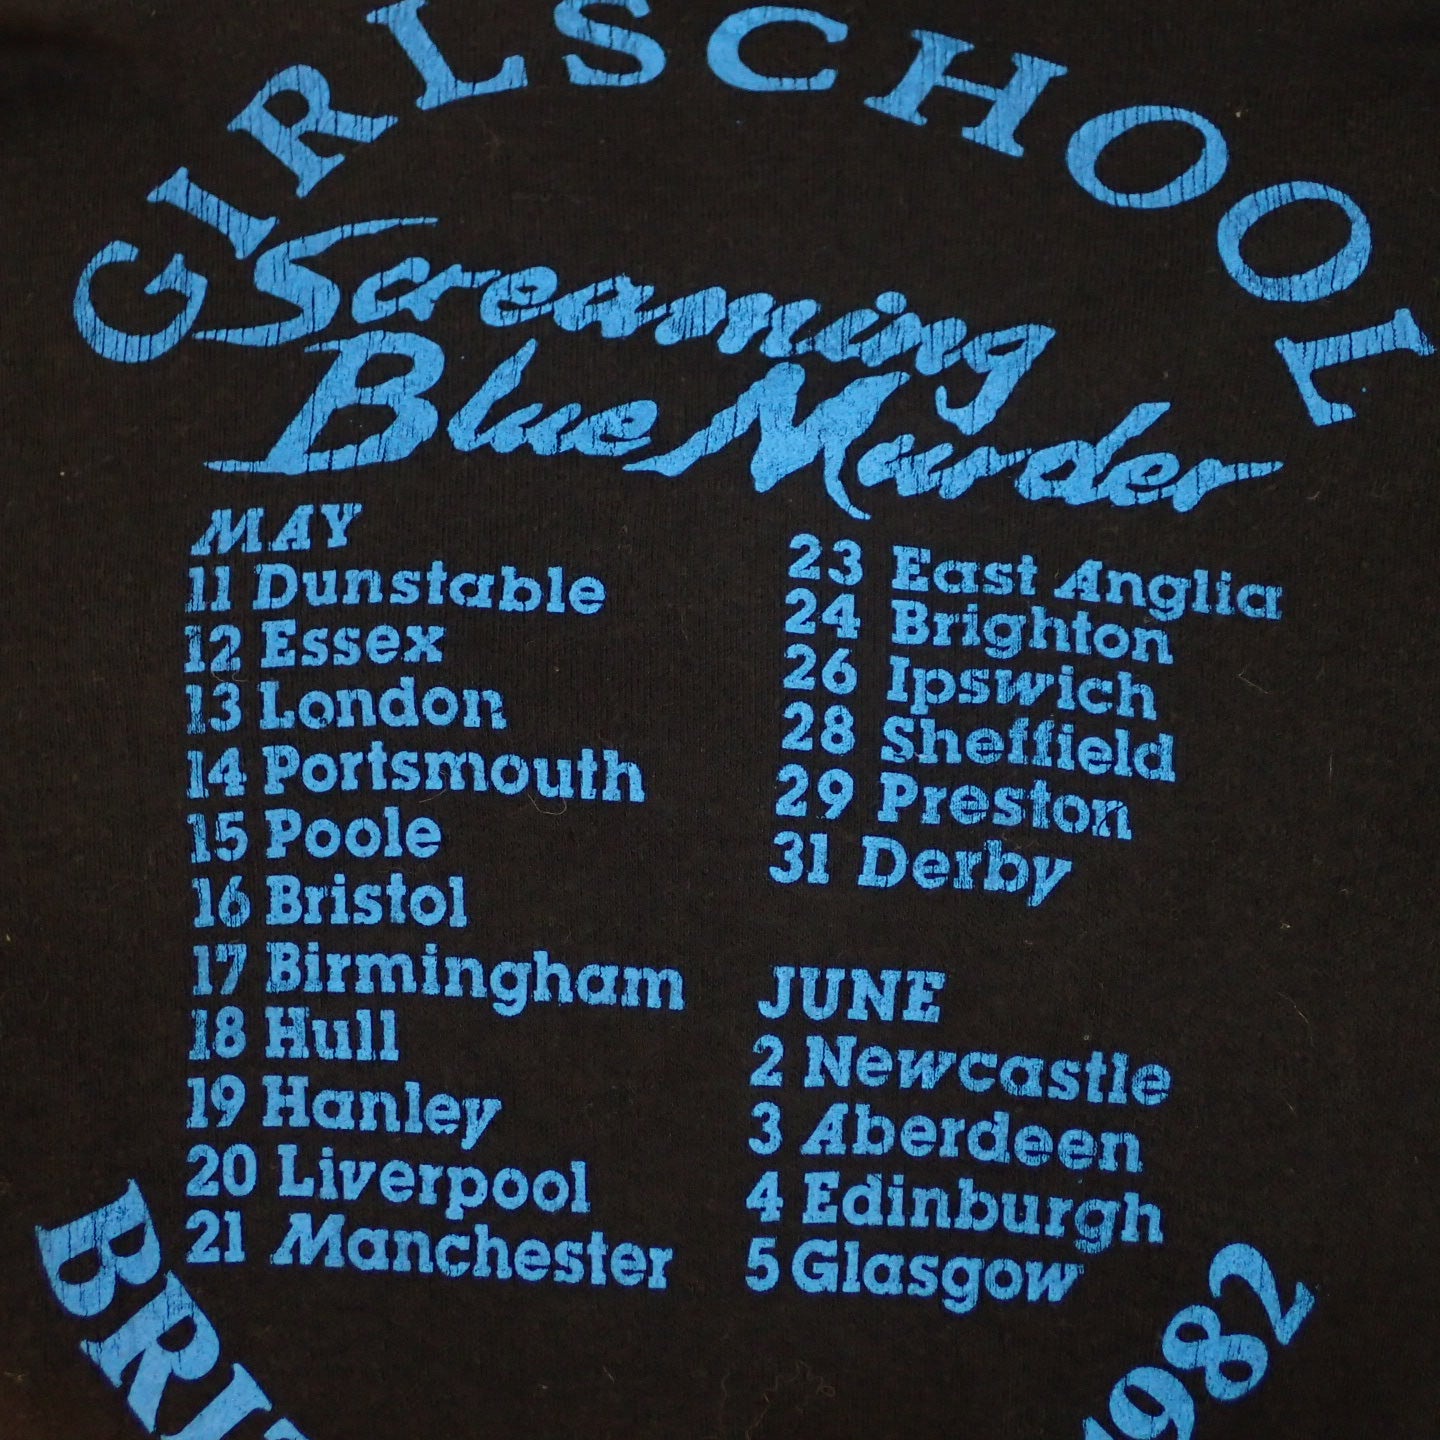 80s Girlschool T-shirt "Screaming Blue Murder Tee"